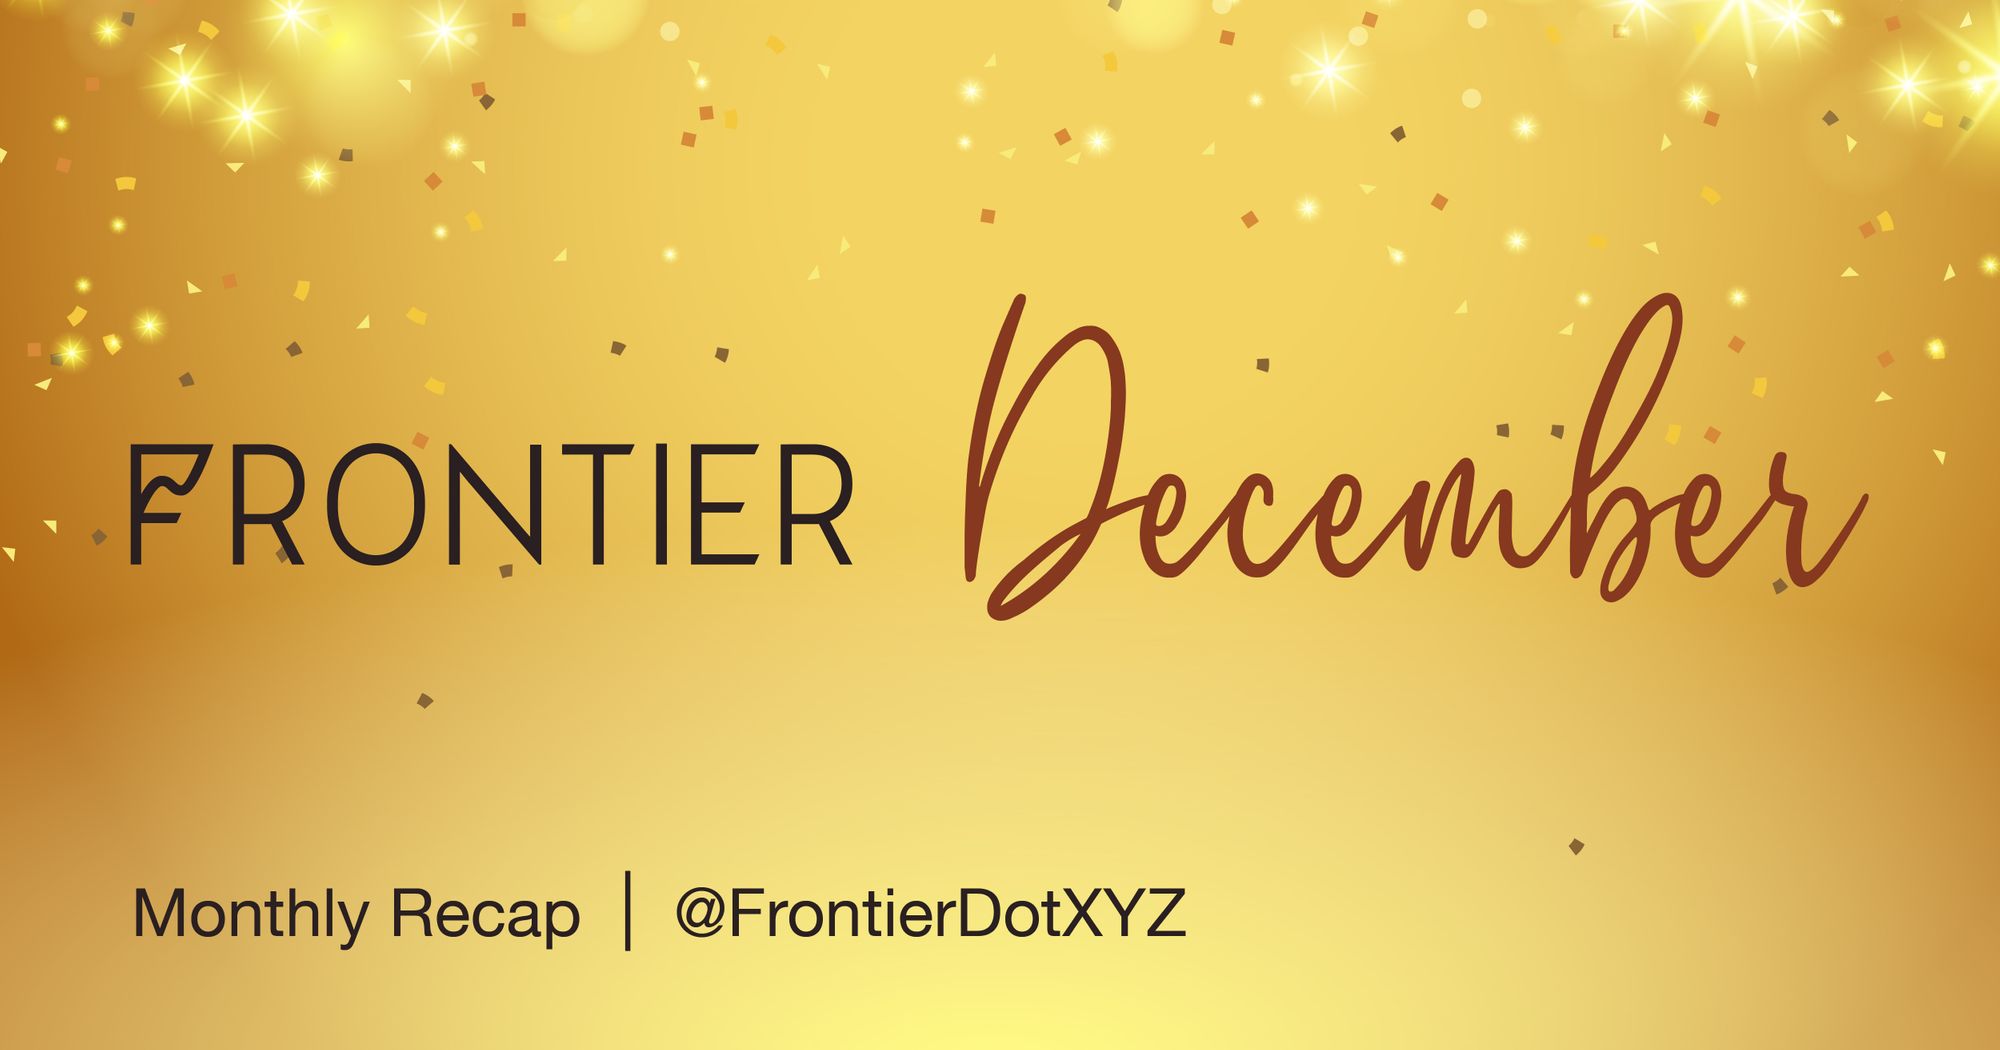 Frontier December Recap